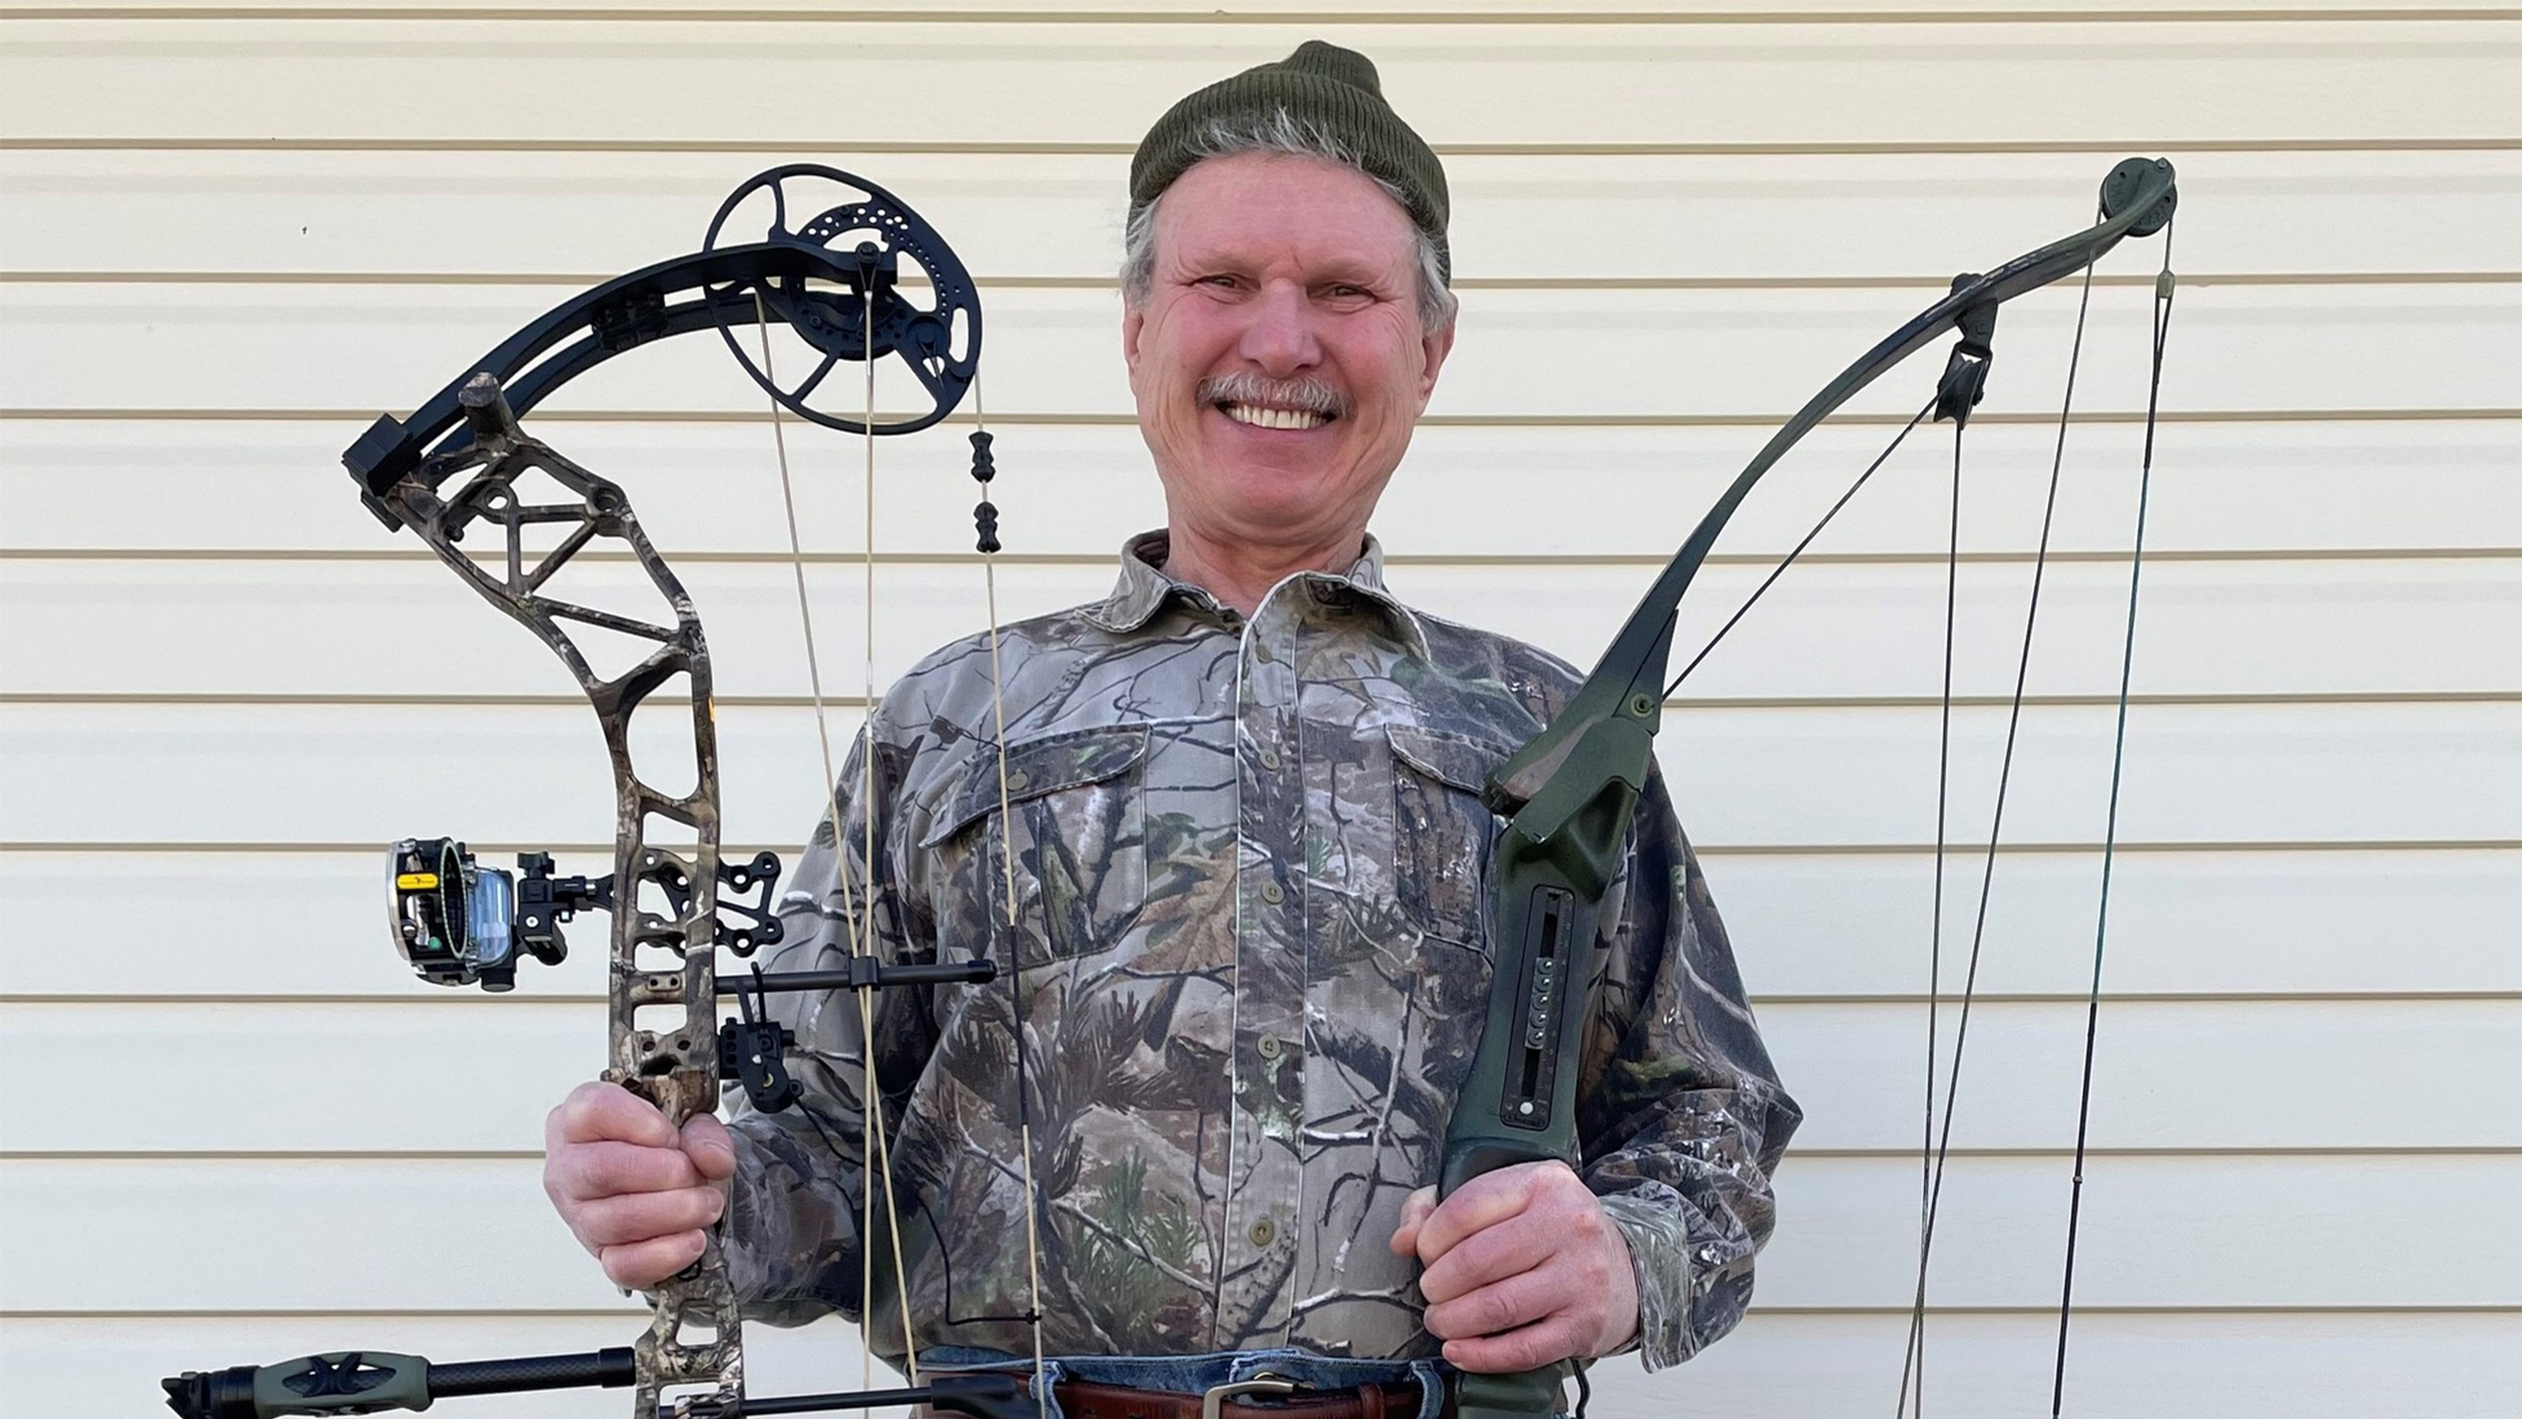 Chuck Adams with Bear Archery Alaskan Compound Bow